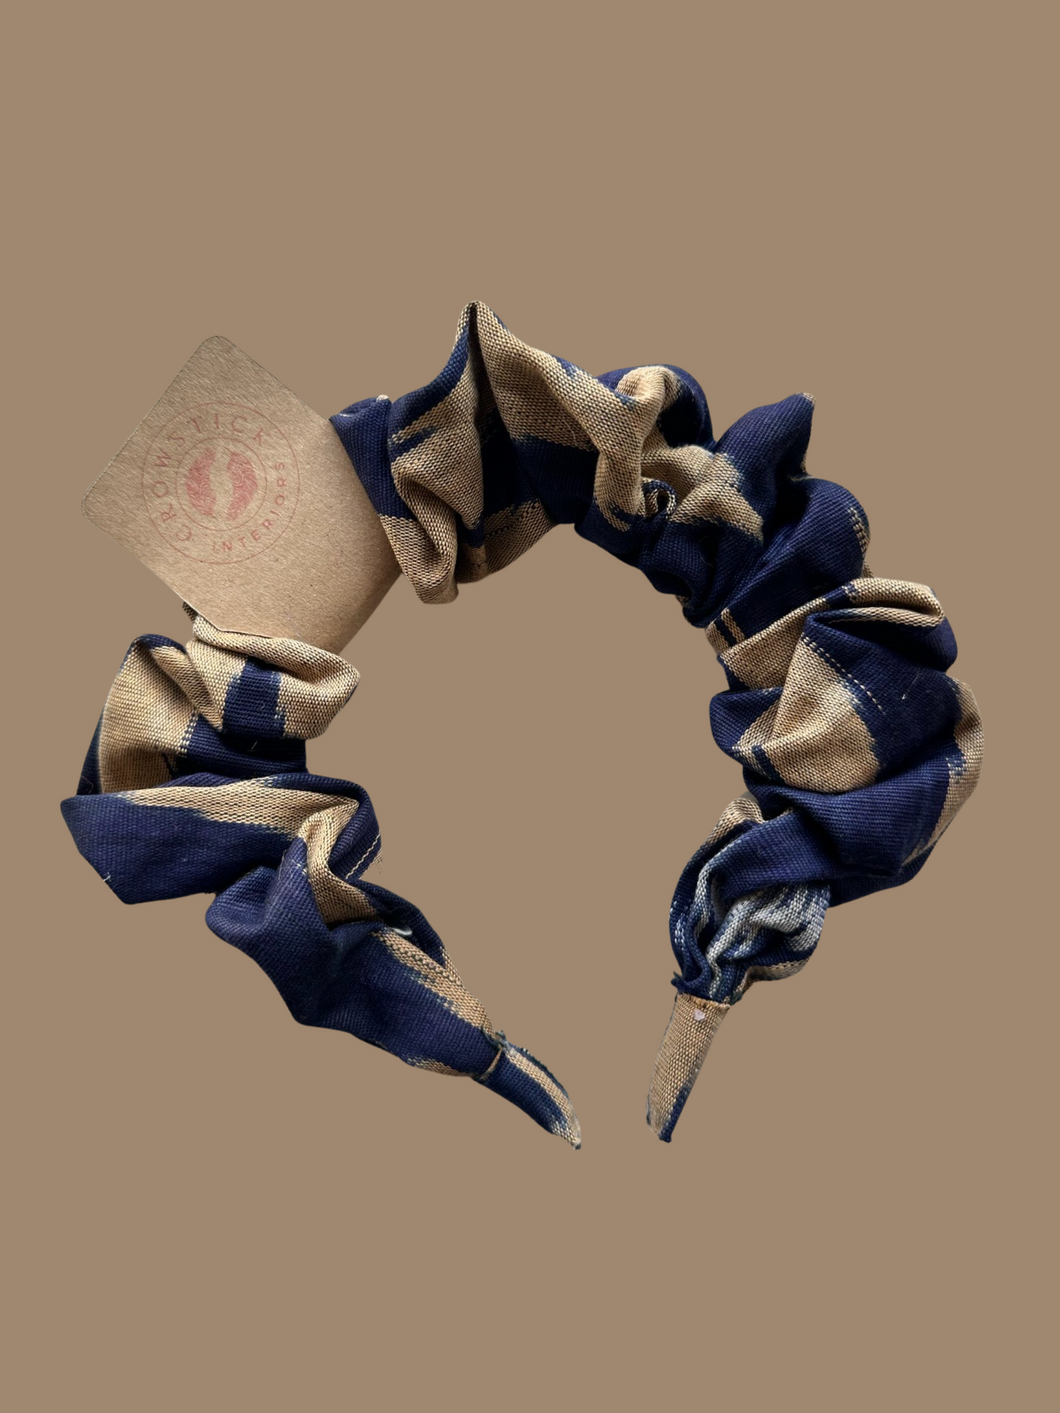 Ikat Cotton Scrunchie Headband - Navy & Beige